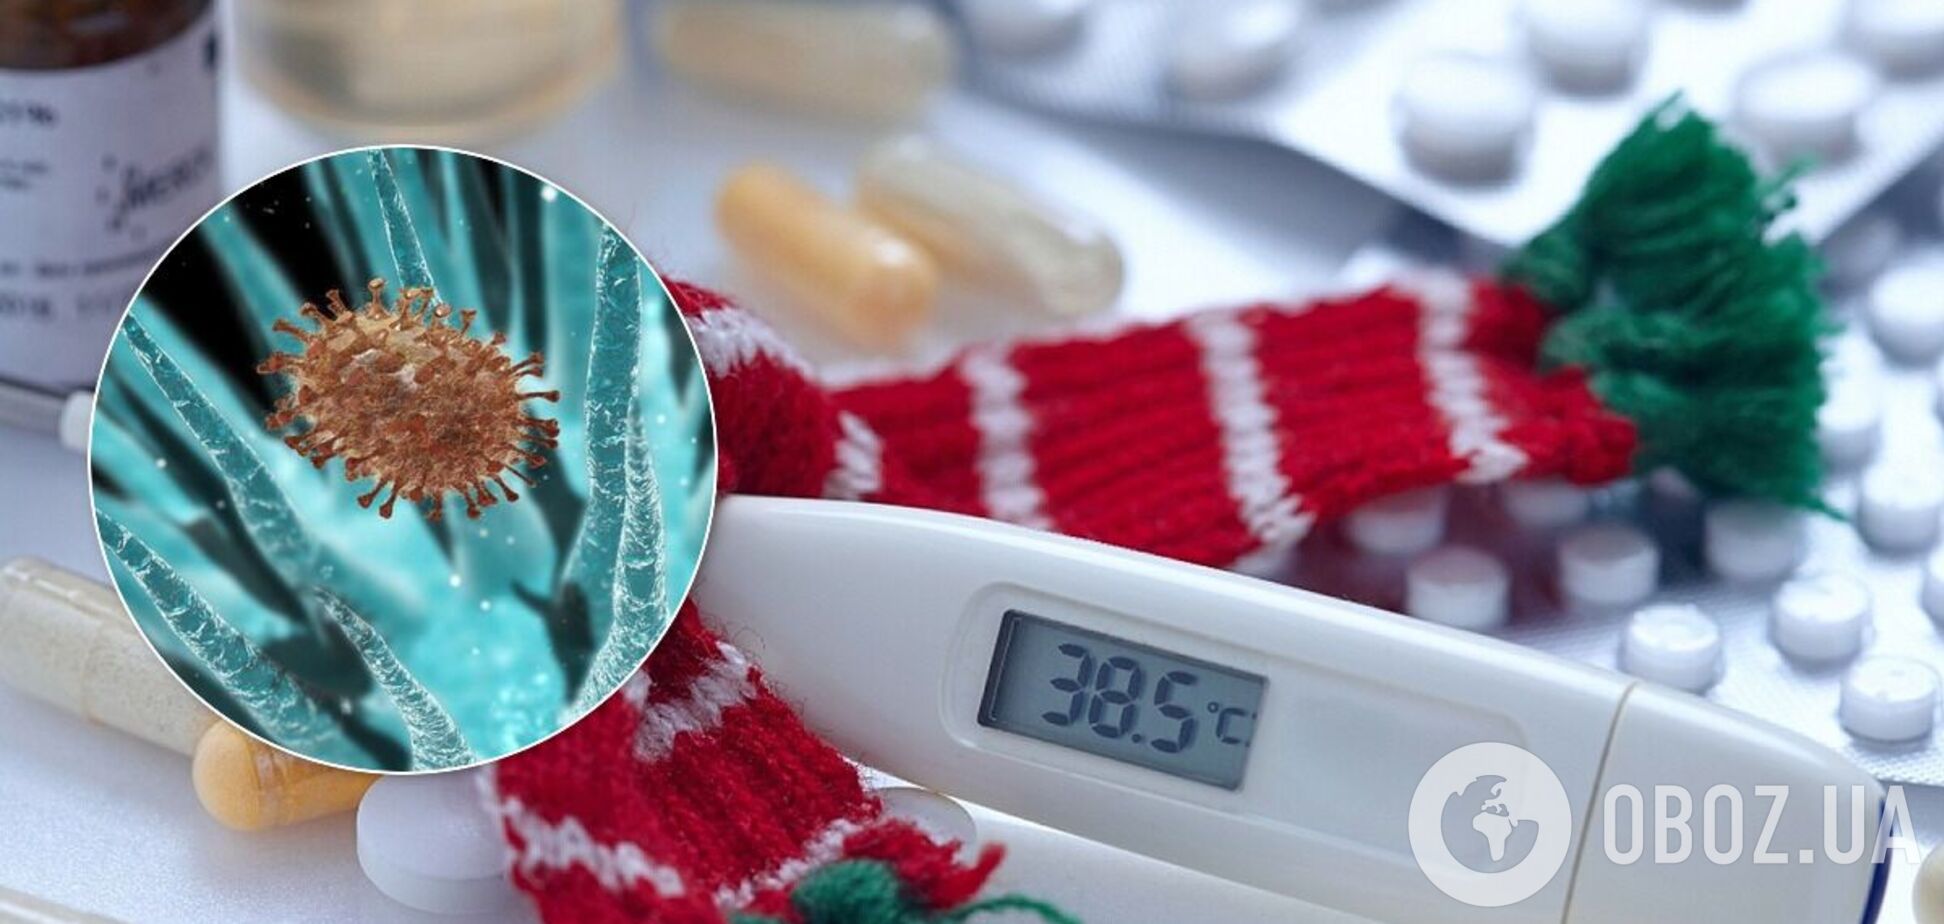 Медик заявил о появлении новых вирусов гриппа в Украине